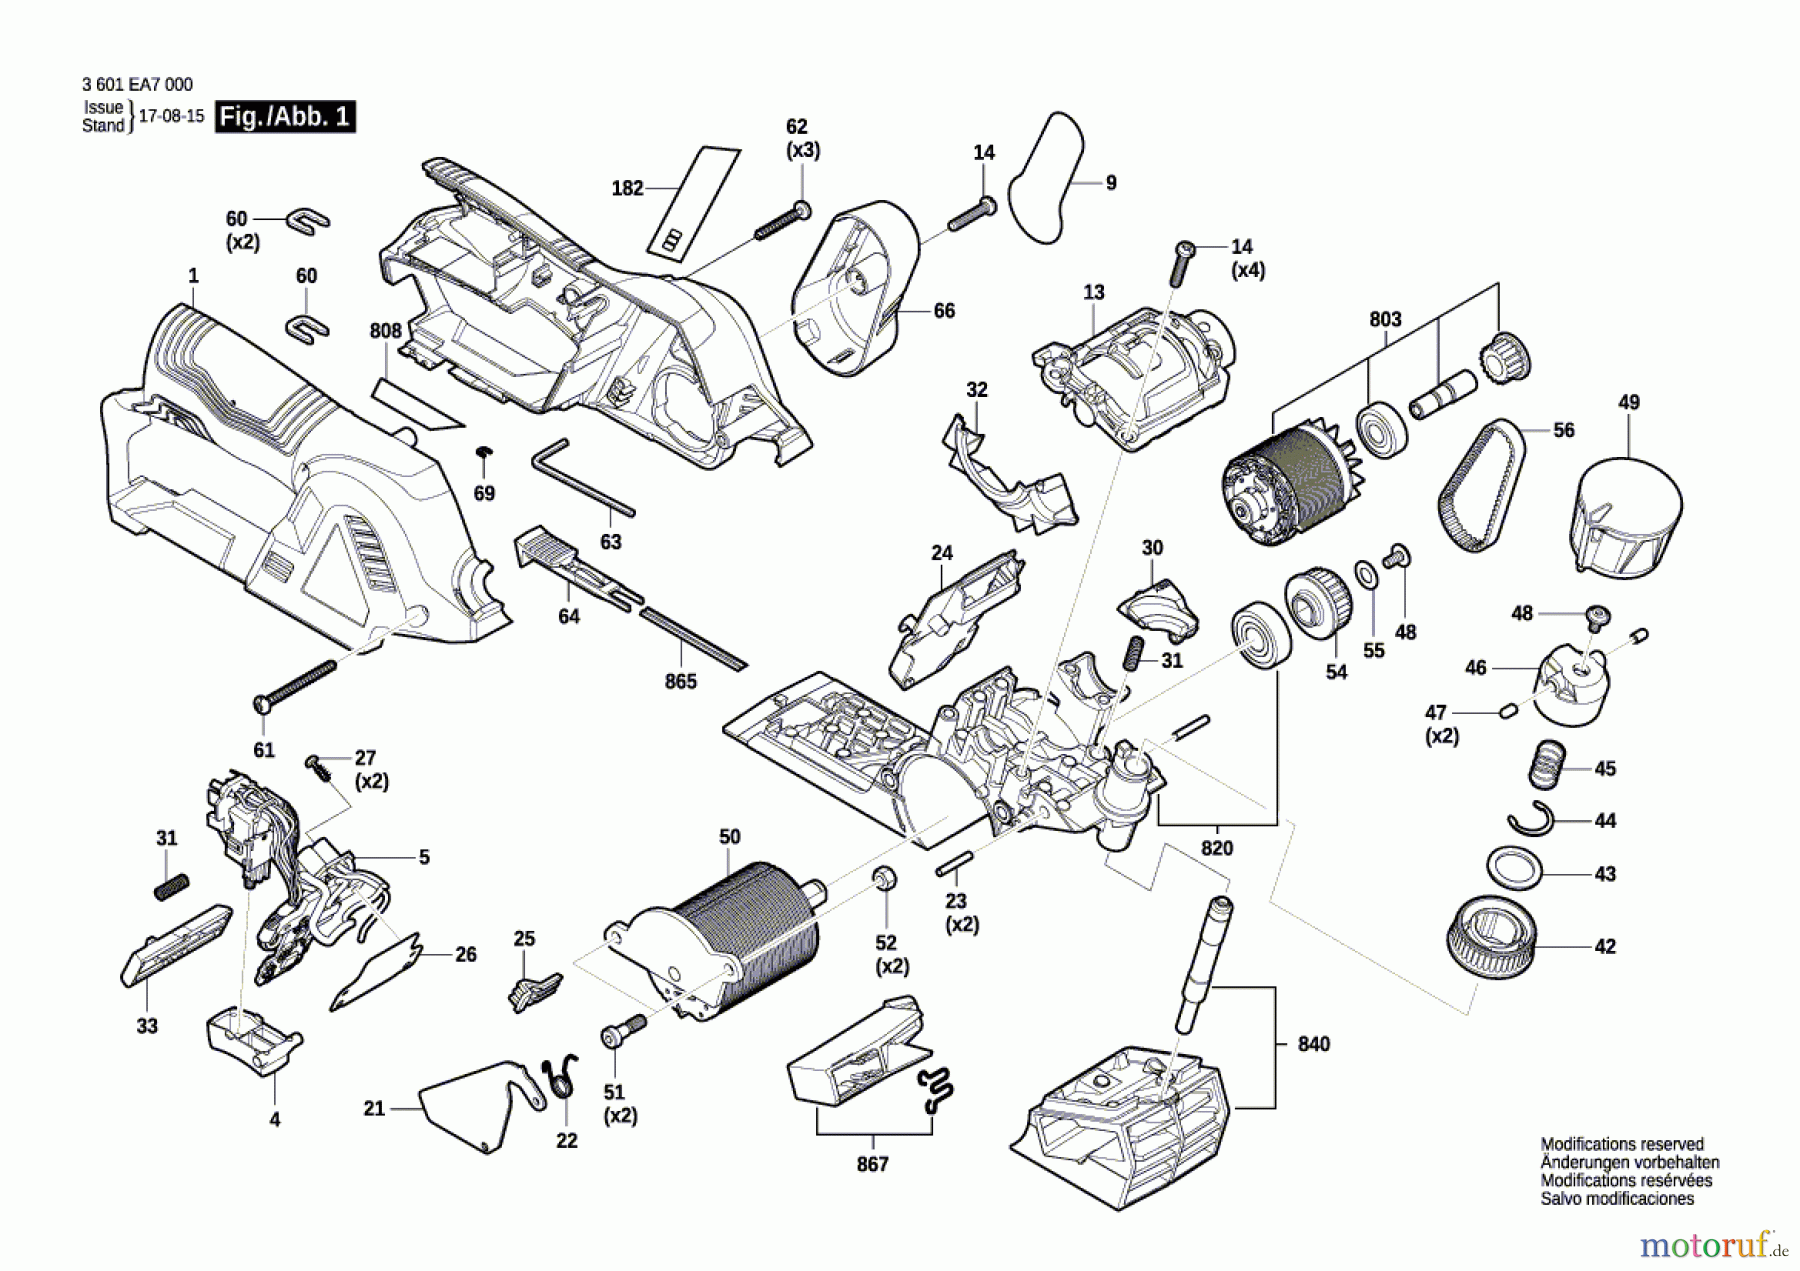  Bosch Werkzeug Hobel/Elektrowerkzeug GHO 12V-20 Seite 1